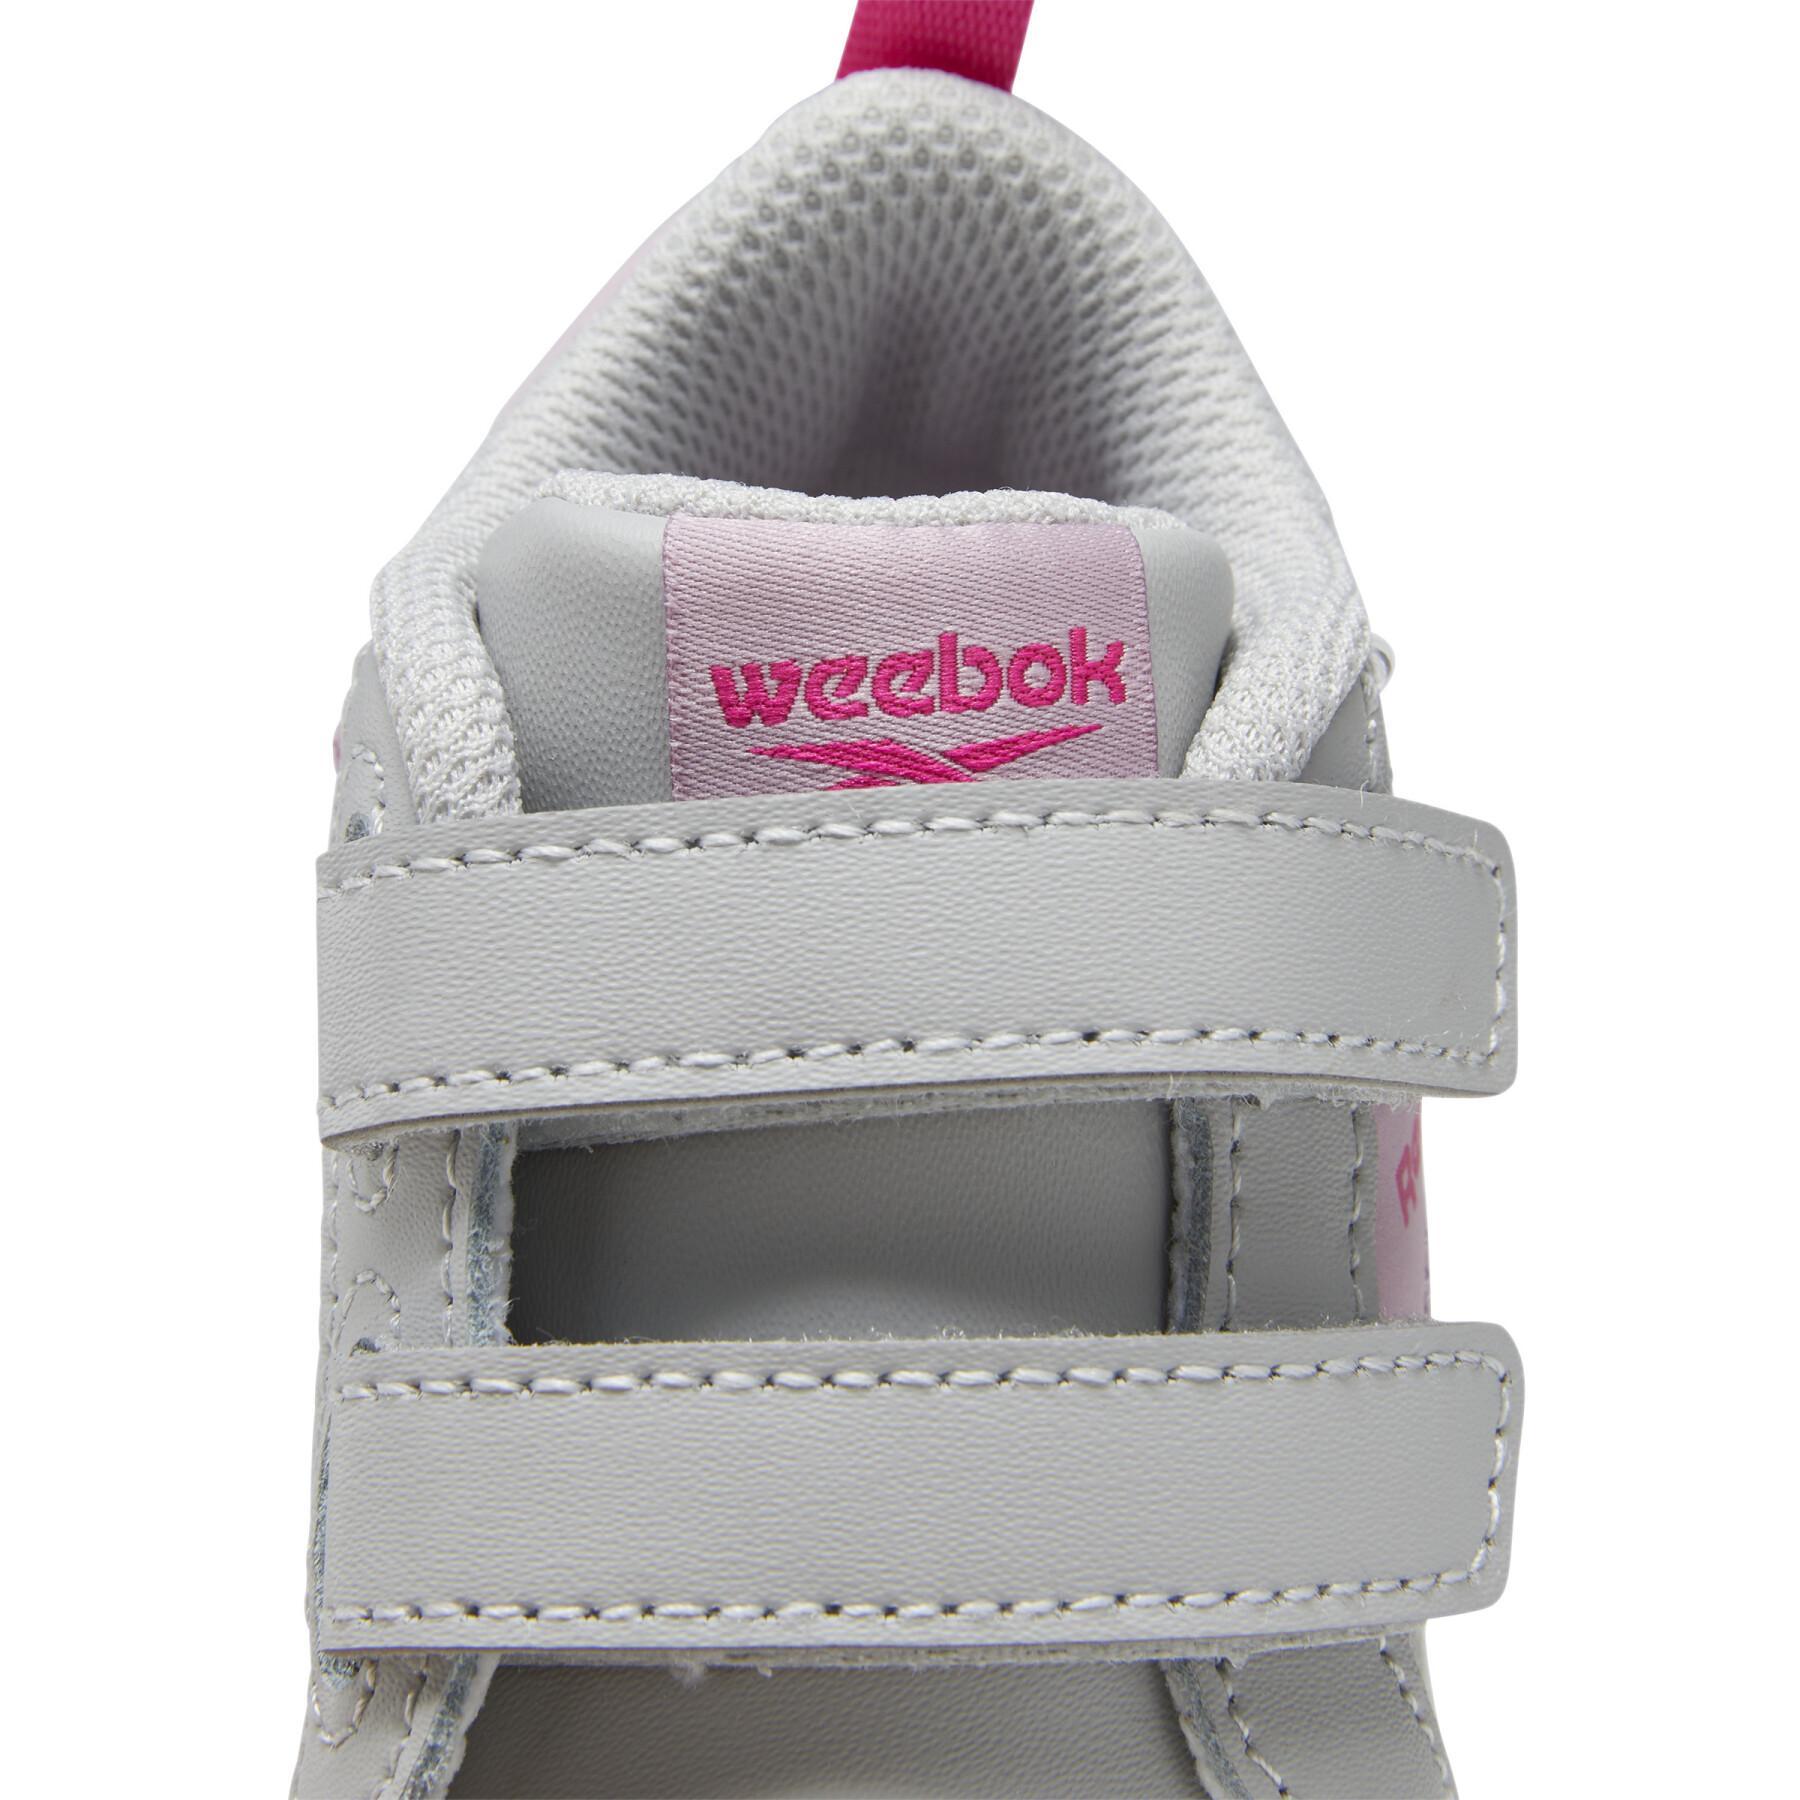 Children's sneakers Reebok Weebok Clasp Low